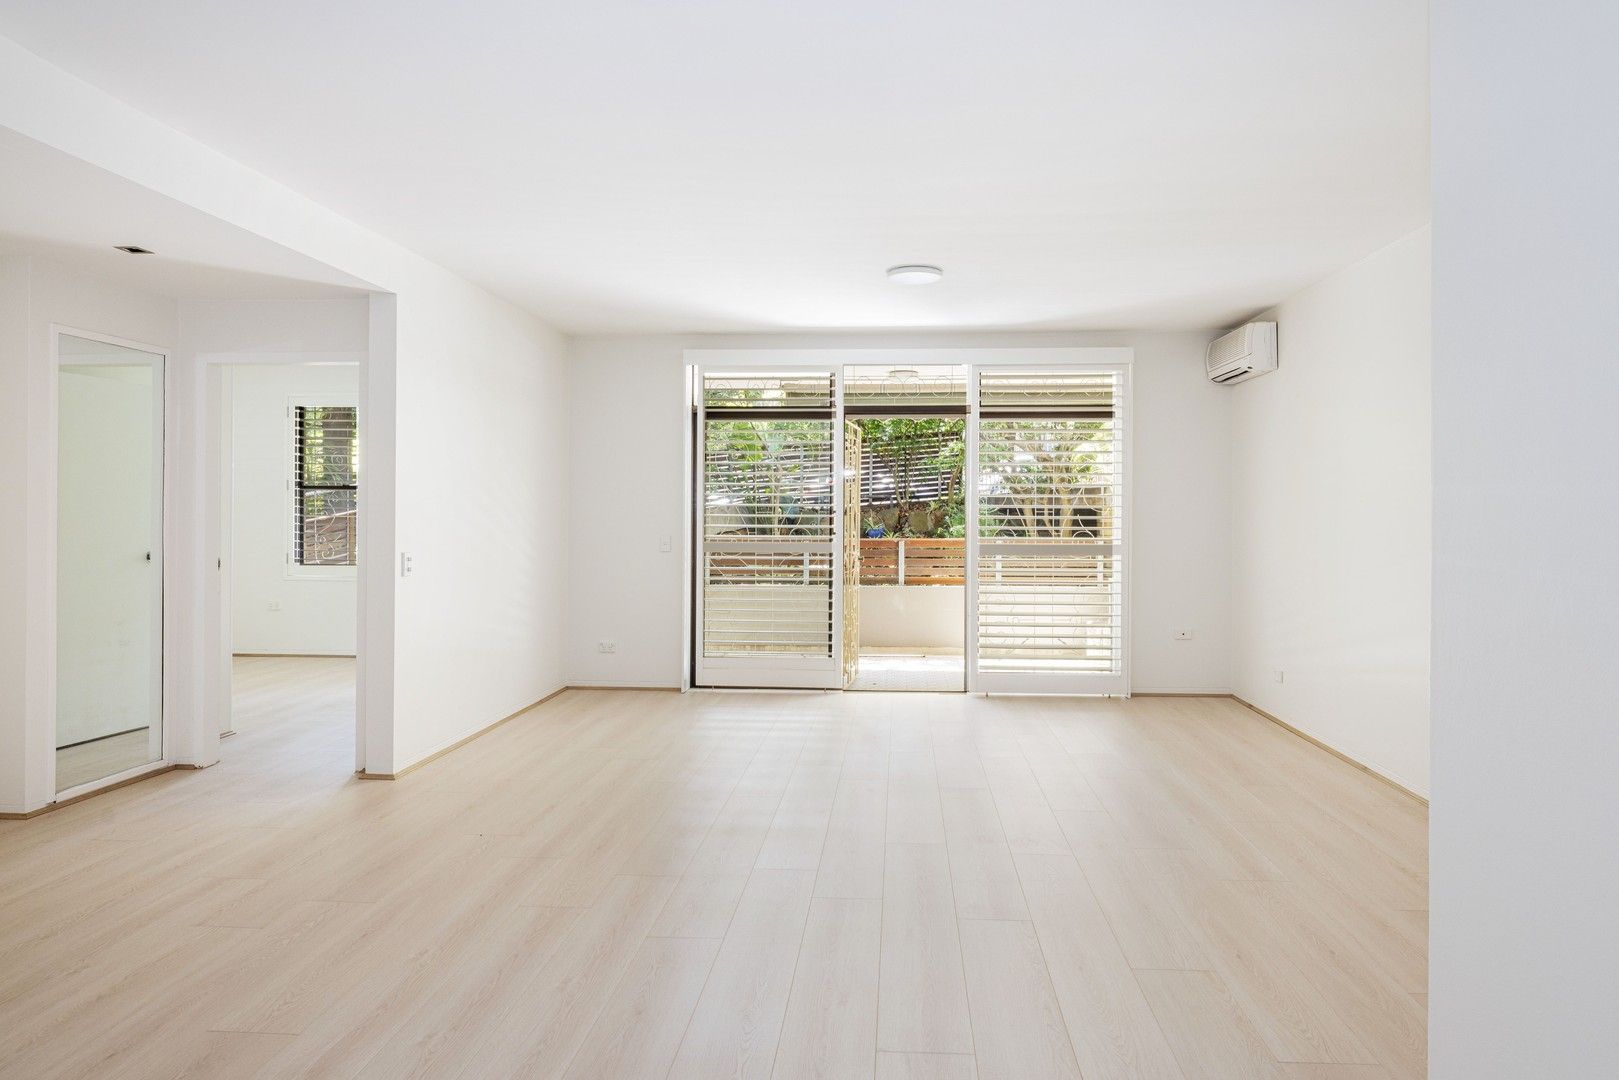 2 bedrooms Apartment / Unit / Flat in 12/150 Bellevue Road BELLEVUE HILL NSW, 2023